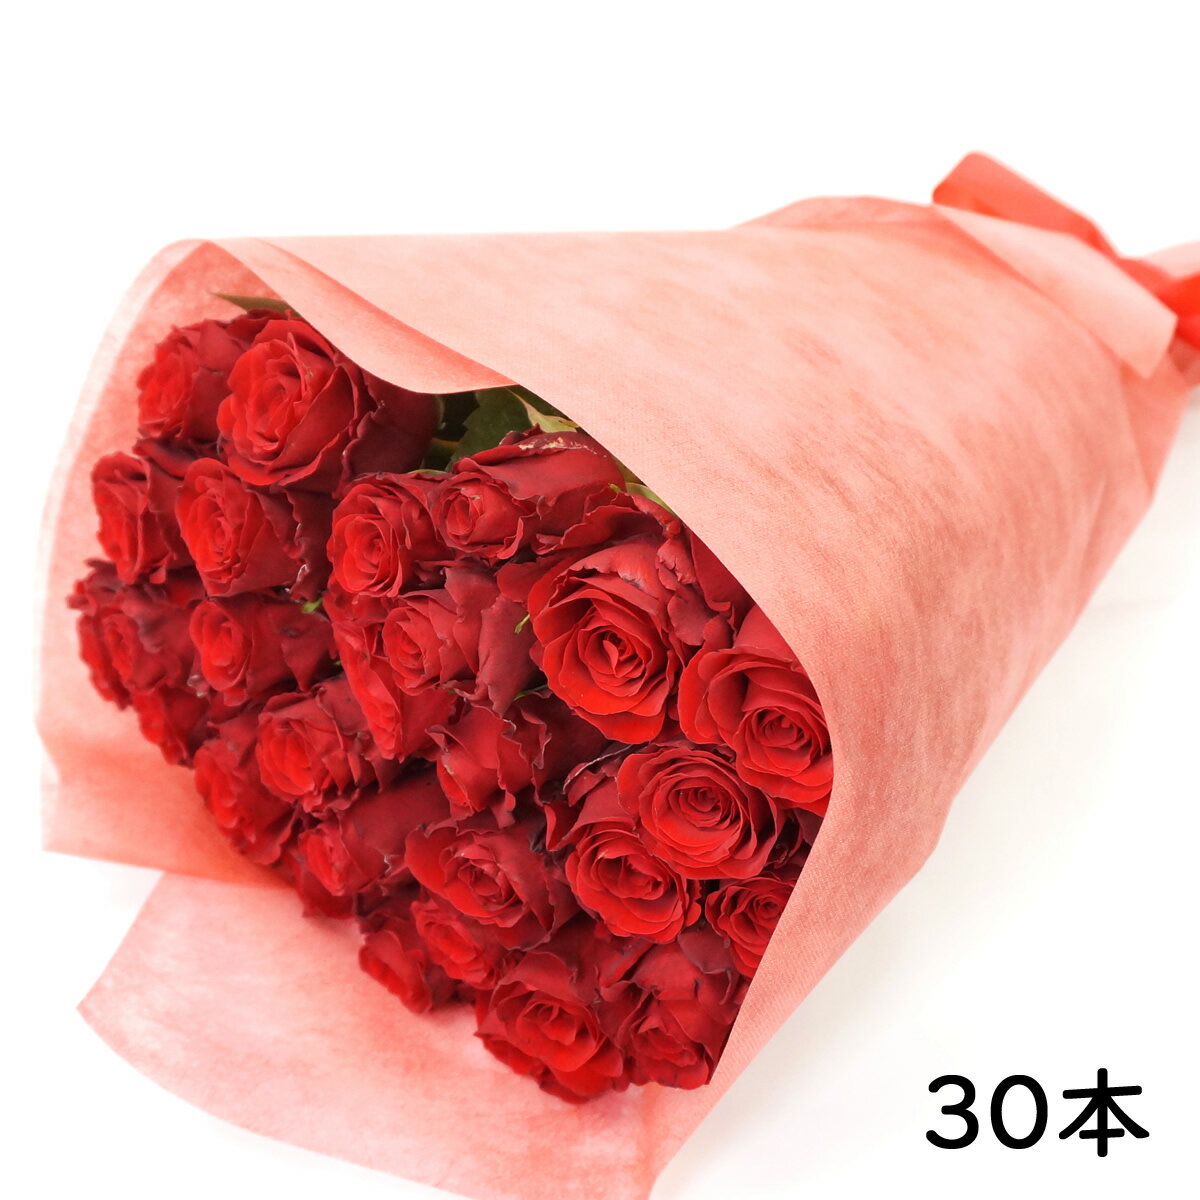 定番のバラを花束にしてお届けします。 本数：30本(赤) バラのサイズ：長さ約50〜60cm 産地：ケニアまたはエクアドル 商品サイズ：30本・・・20×50cm 付属品：ラッピングペーパー、リボン、メッセージカード ※メッセージ（日本語20字以内・英語15単語以内）がつけられます。 ※写真はイメージで実際配達される花束とは異なります。 ■お届けについて お届け日の指定は注文日より3日後以降（土日祝日除く）となります。 大切なお届けの場合は前日のお届けをお勧めします。 配達方法：宅配便 ▲下記の地域には配達できません。 北海道(利尻島・礼文島)・東京都(伊豆諸島)・鹿児島県(大島郡・名瀬市・西之表島・鹿児島郡(三島村・十島村)・熊毛郡・薩摩郡(上瓶村・里村・下瓶村・鹿島村)・沖縄県全域 ※G-Callショッピングにて他の商品と一緒にご購入の場合、別途送料がかかる場合があります。その際はご注文後ご連絡いたします。